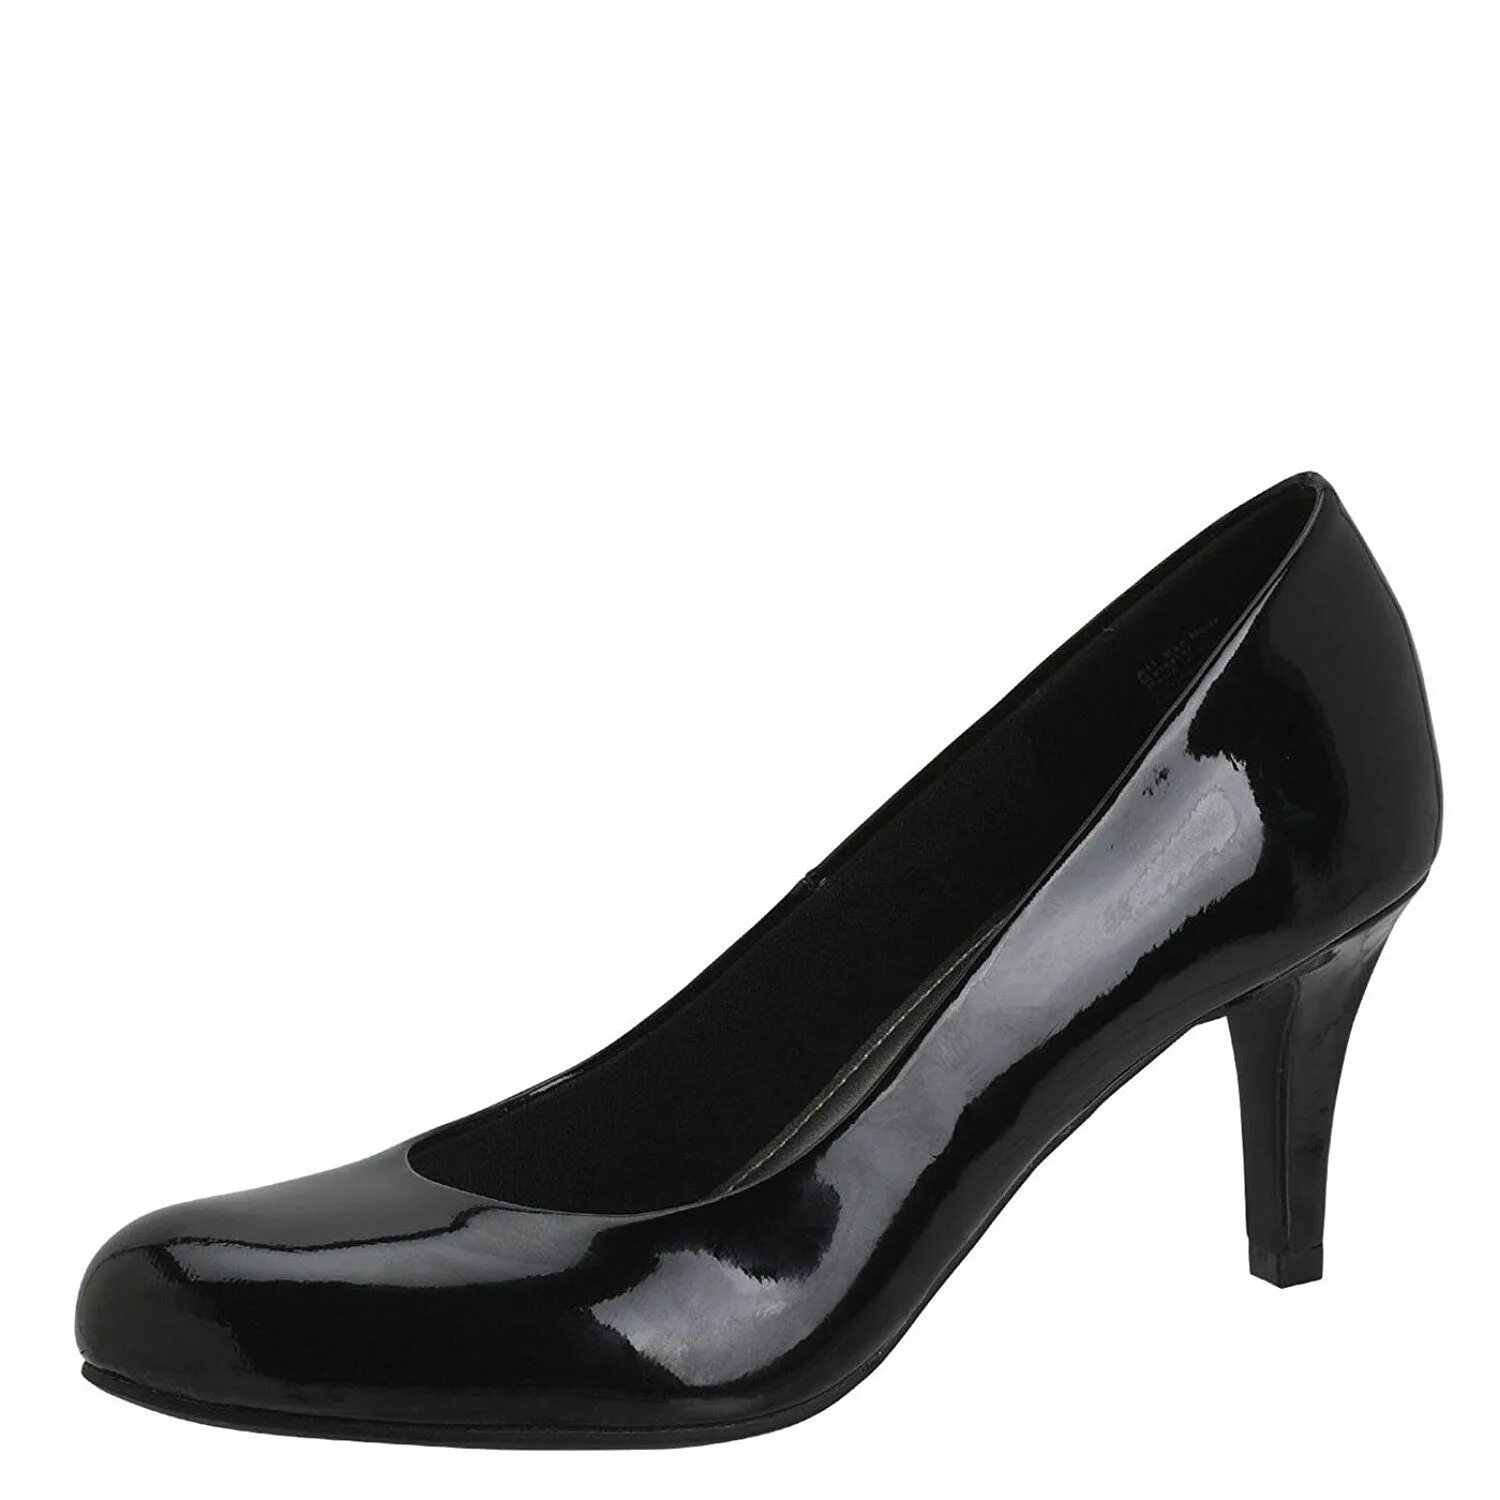 Туфли женские Karmen Comfort Plus. Лаковые туфли на каблуке. Туфли 42 размера женские. Лаковые туфли на высоком каблуке.